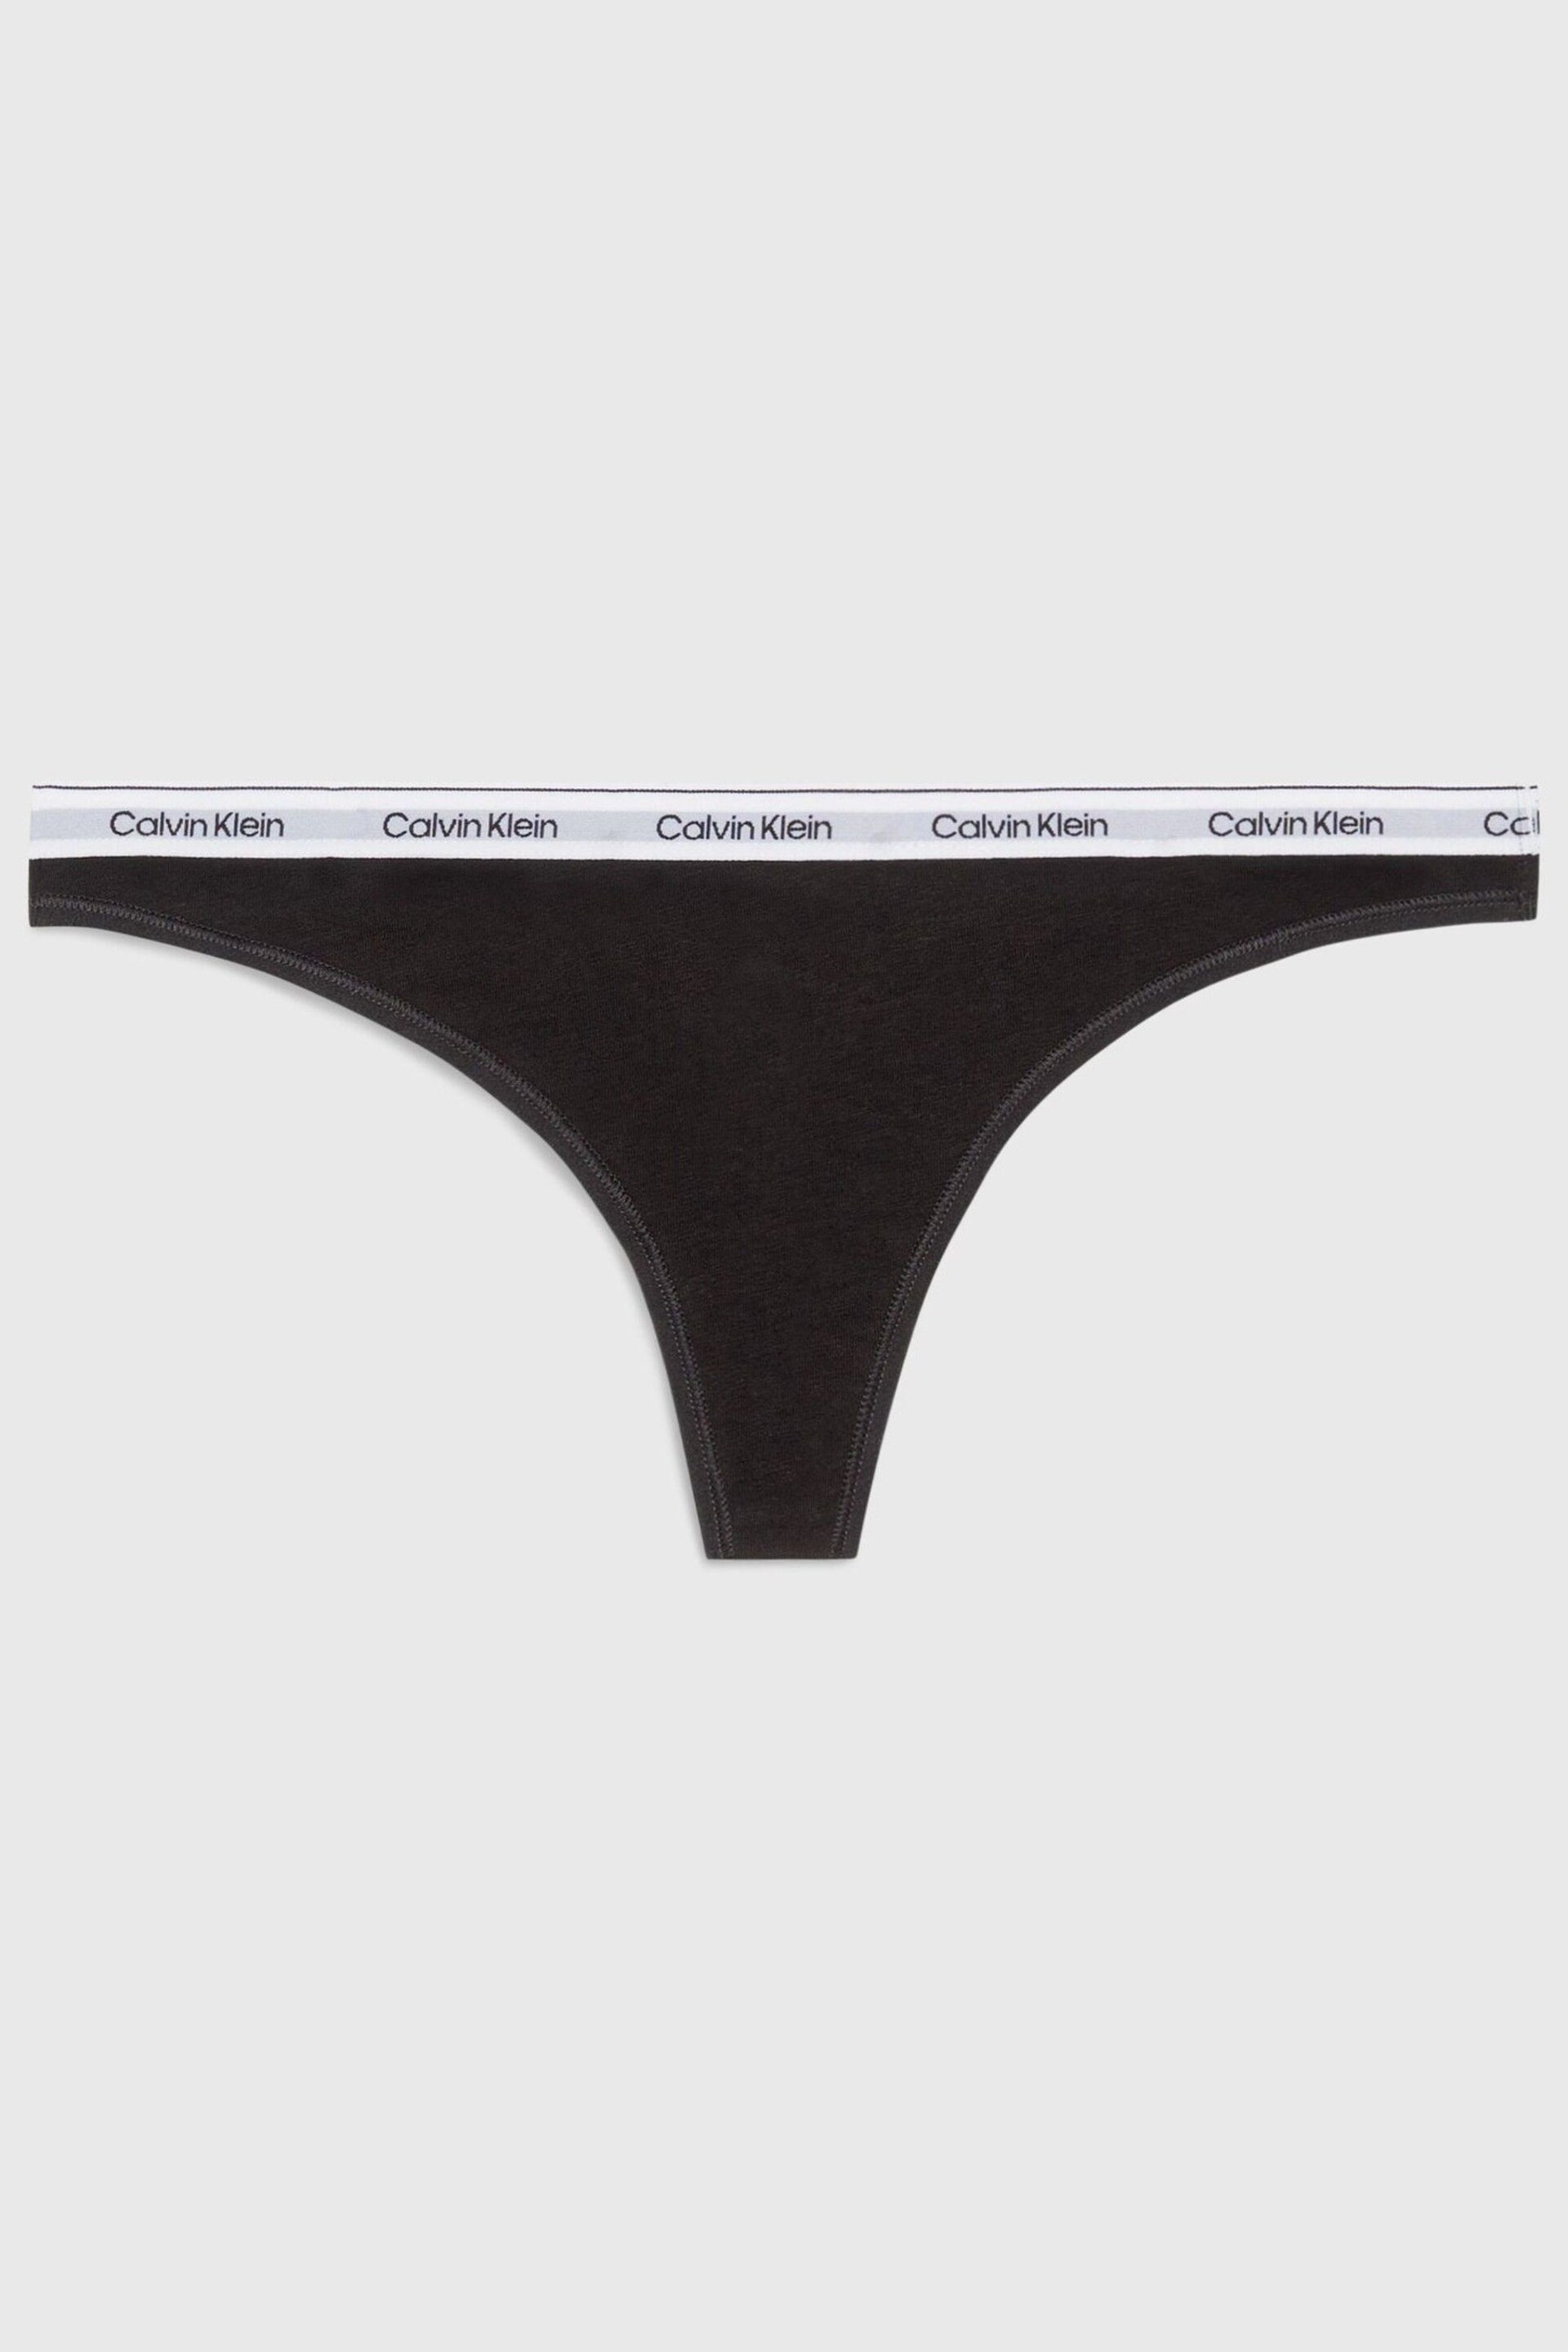 Calvin Klein Black Thong - Image 4 of 7